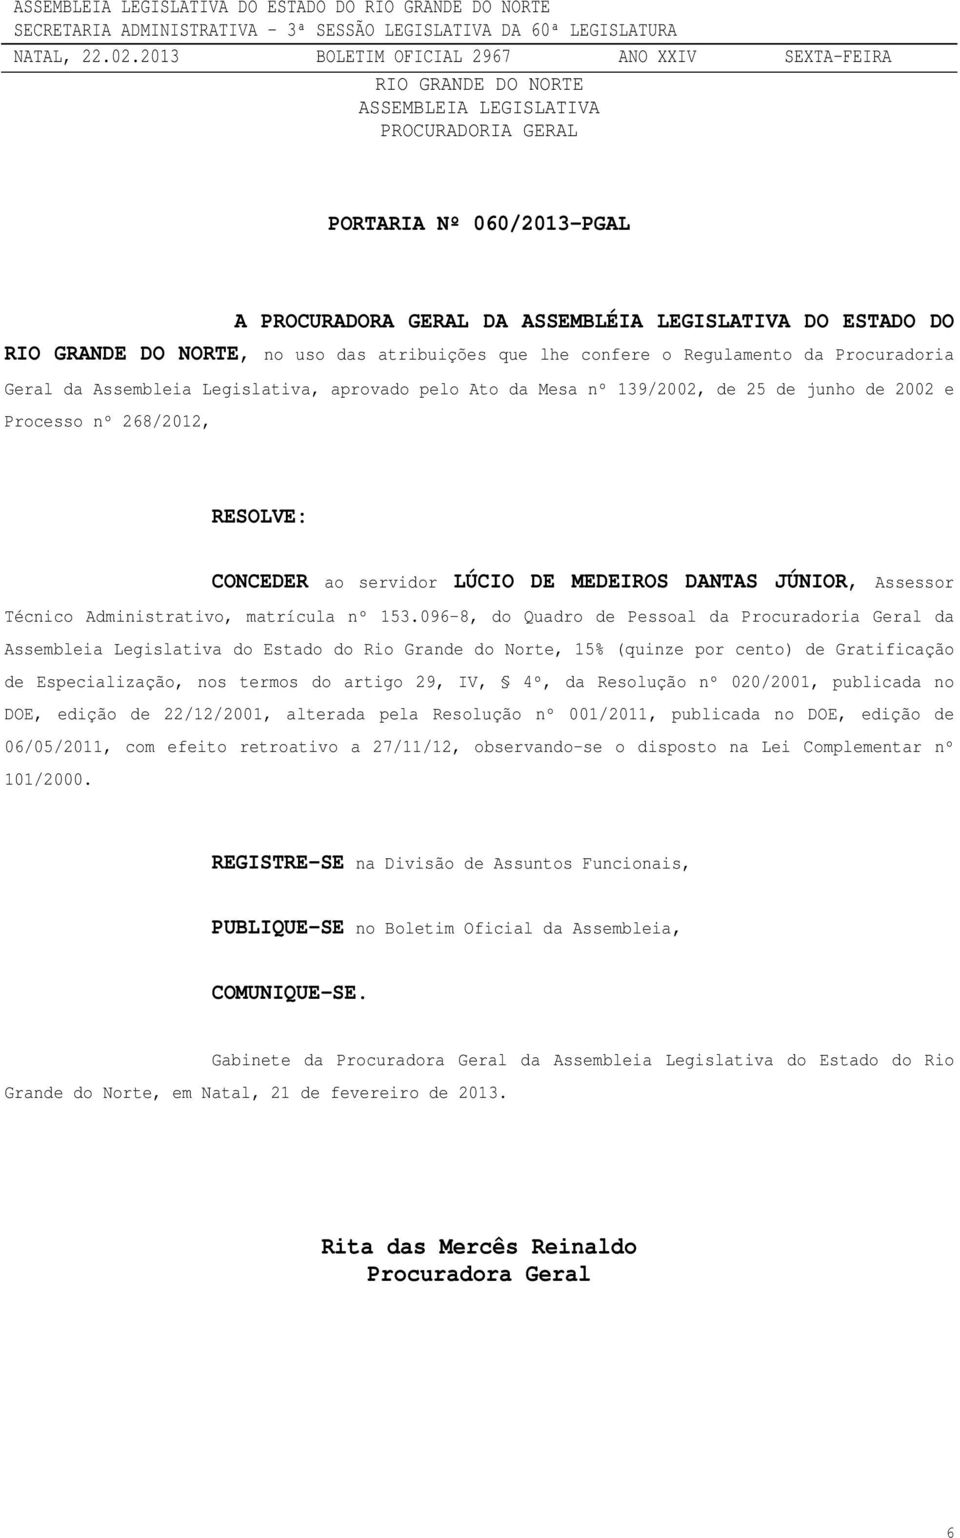 096-8, do Quadro de Pessoal da Procuradoria Geral da Assembleia Legislativa do Estado do Rio Grande do Norte, 15% (quinze por cento) de Gratificação de Especialização, nos termos do artigo 29, IV,